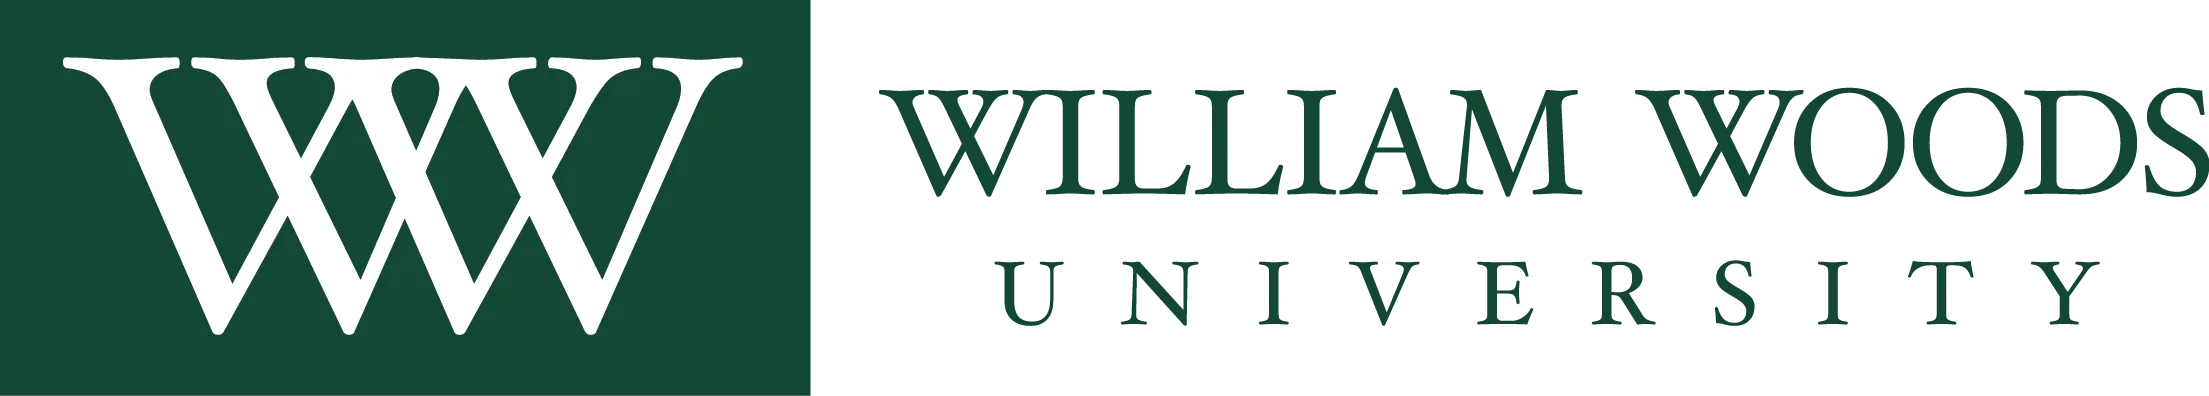 william-woods-owls